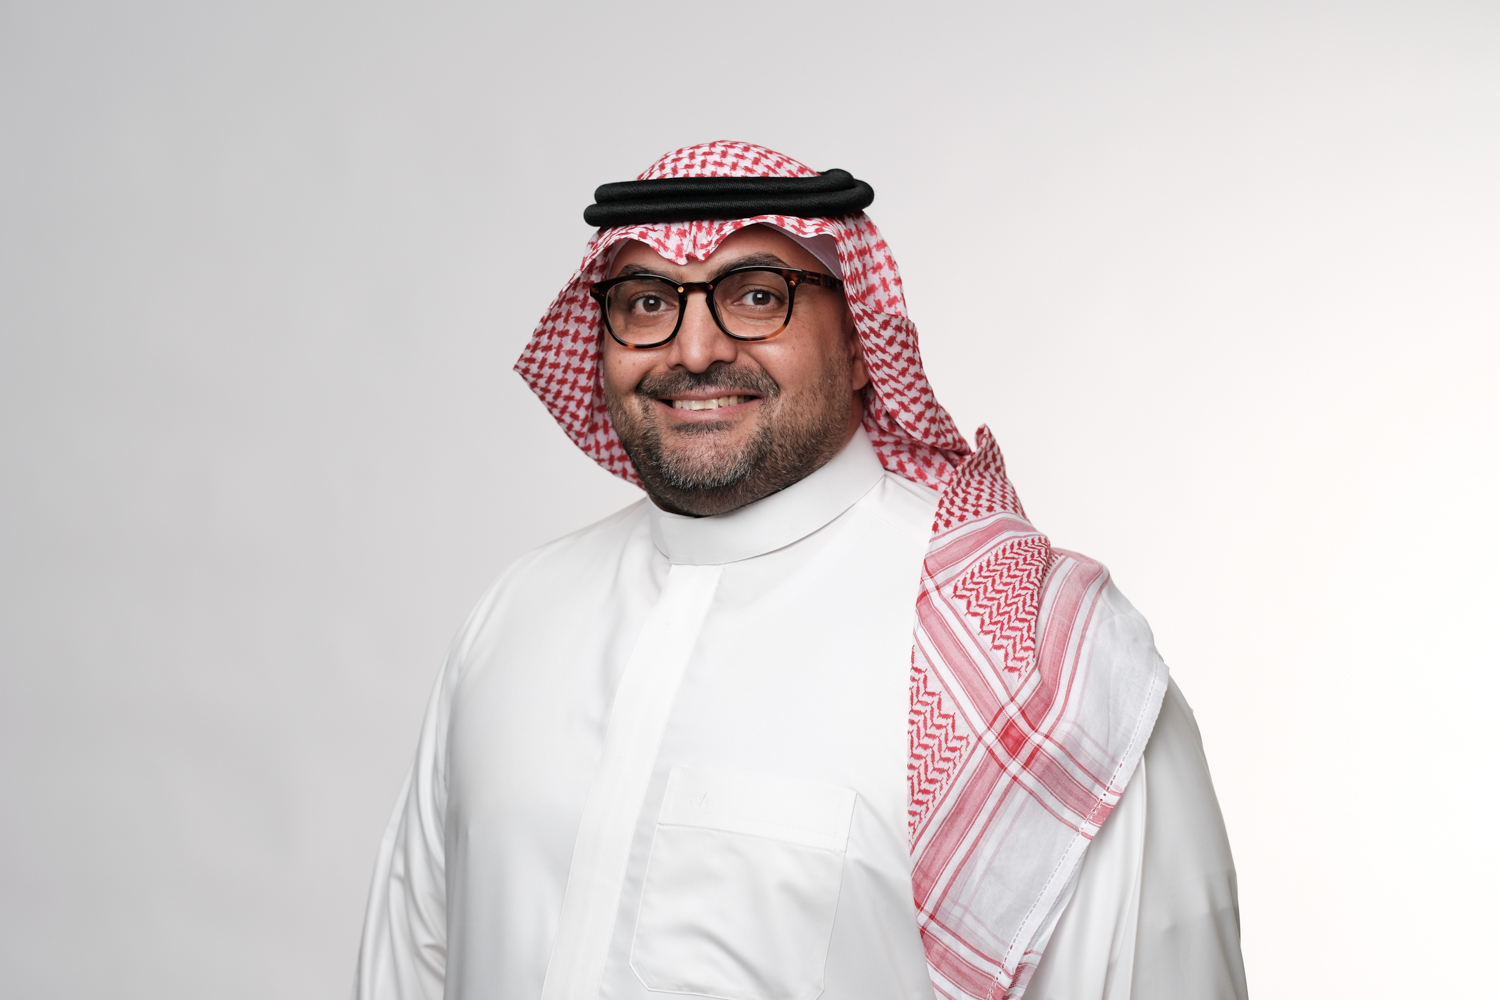 رئيس مؤسسة البريد السعودي "سبل" يشكر القيادة على رعاية المؤتمر الاستثنائي الرابع للاتحاد البريدي العالمي